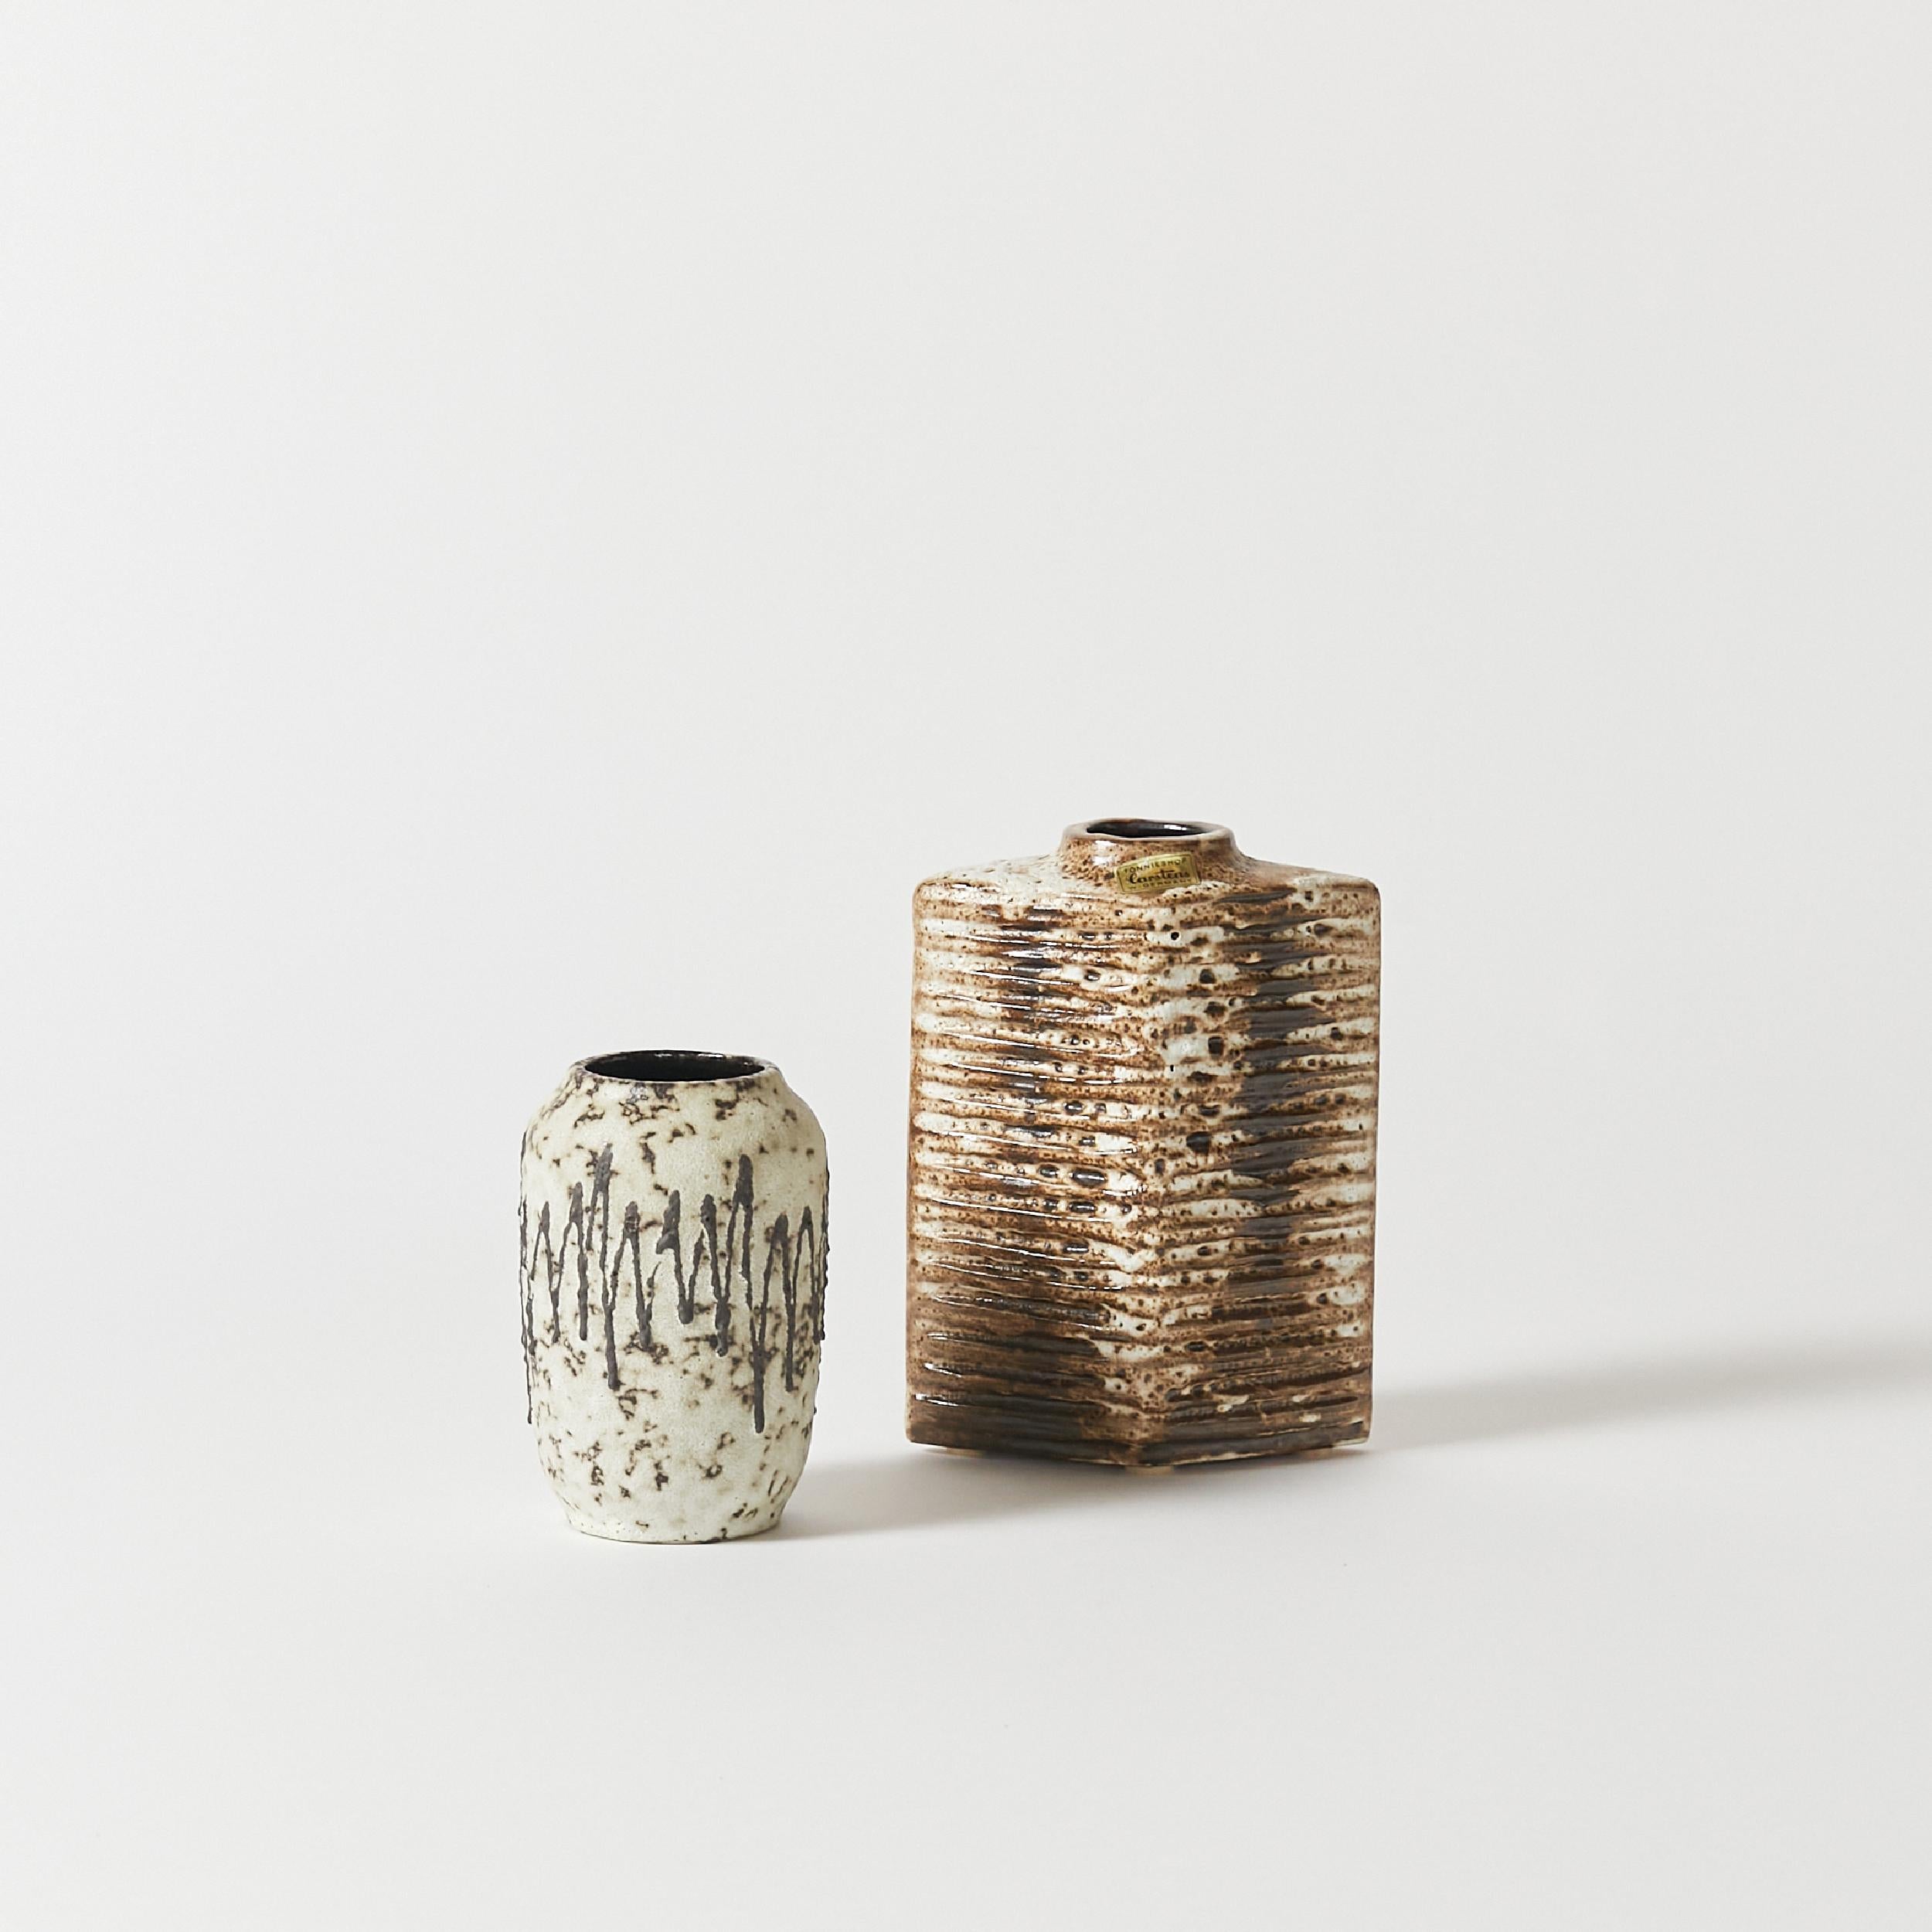 Paire de vases en poterie Lava fabriqués en Allemagne par Carstens, années 1960.
GRAND VASE
HAUTEUR 8.5 IN / 21.59 CM
LARGEUR 6 IN / 15.24 CM
PROFONDEUR 3.25 IN / 8.26 CM
VASE BAS
DIAM 3.5 IN / 8.89 CM
HAUTEUR 6 IN / 15.24 CM